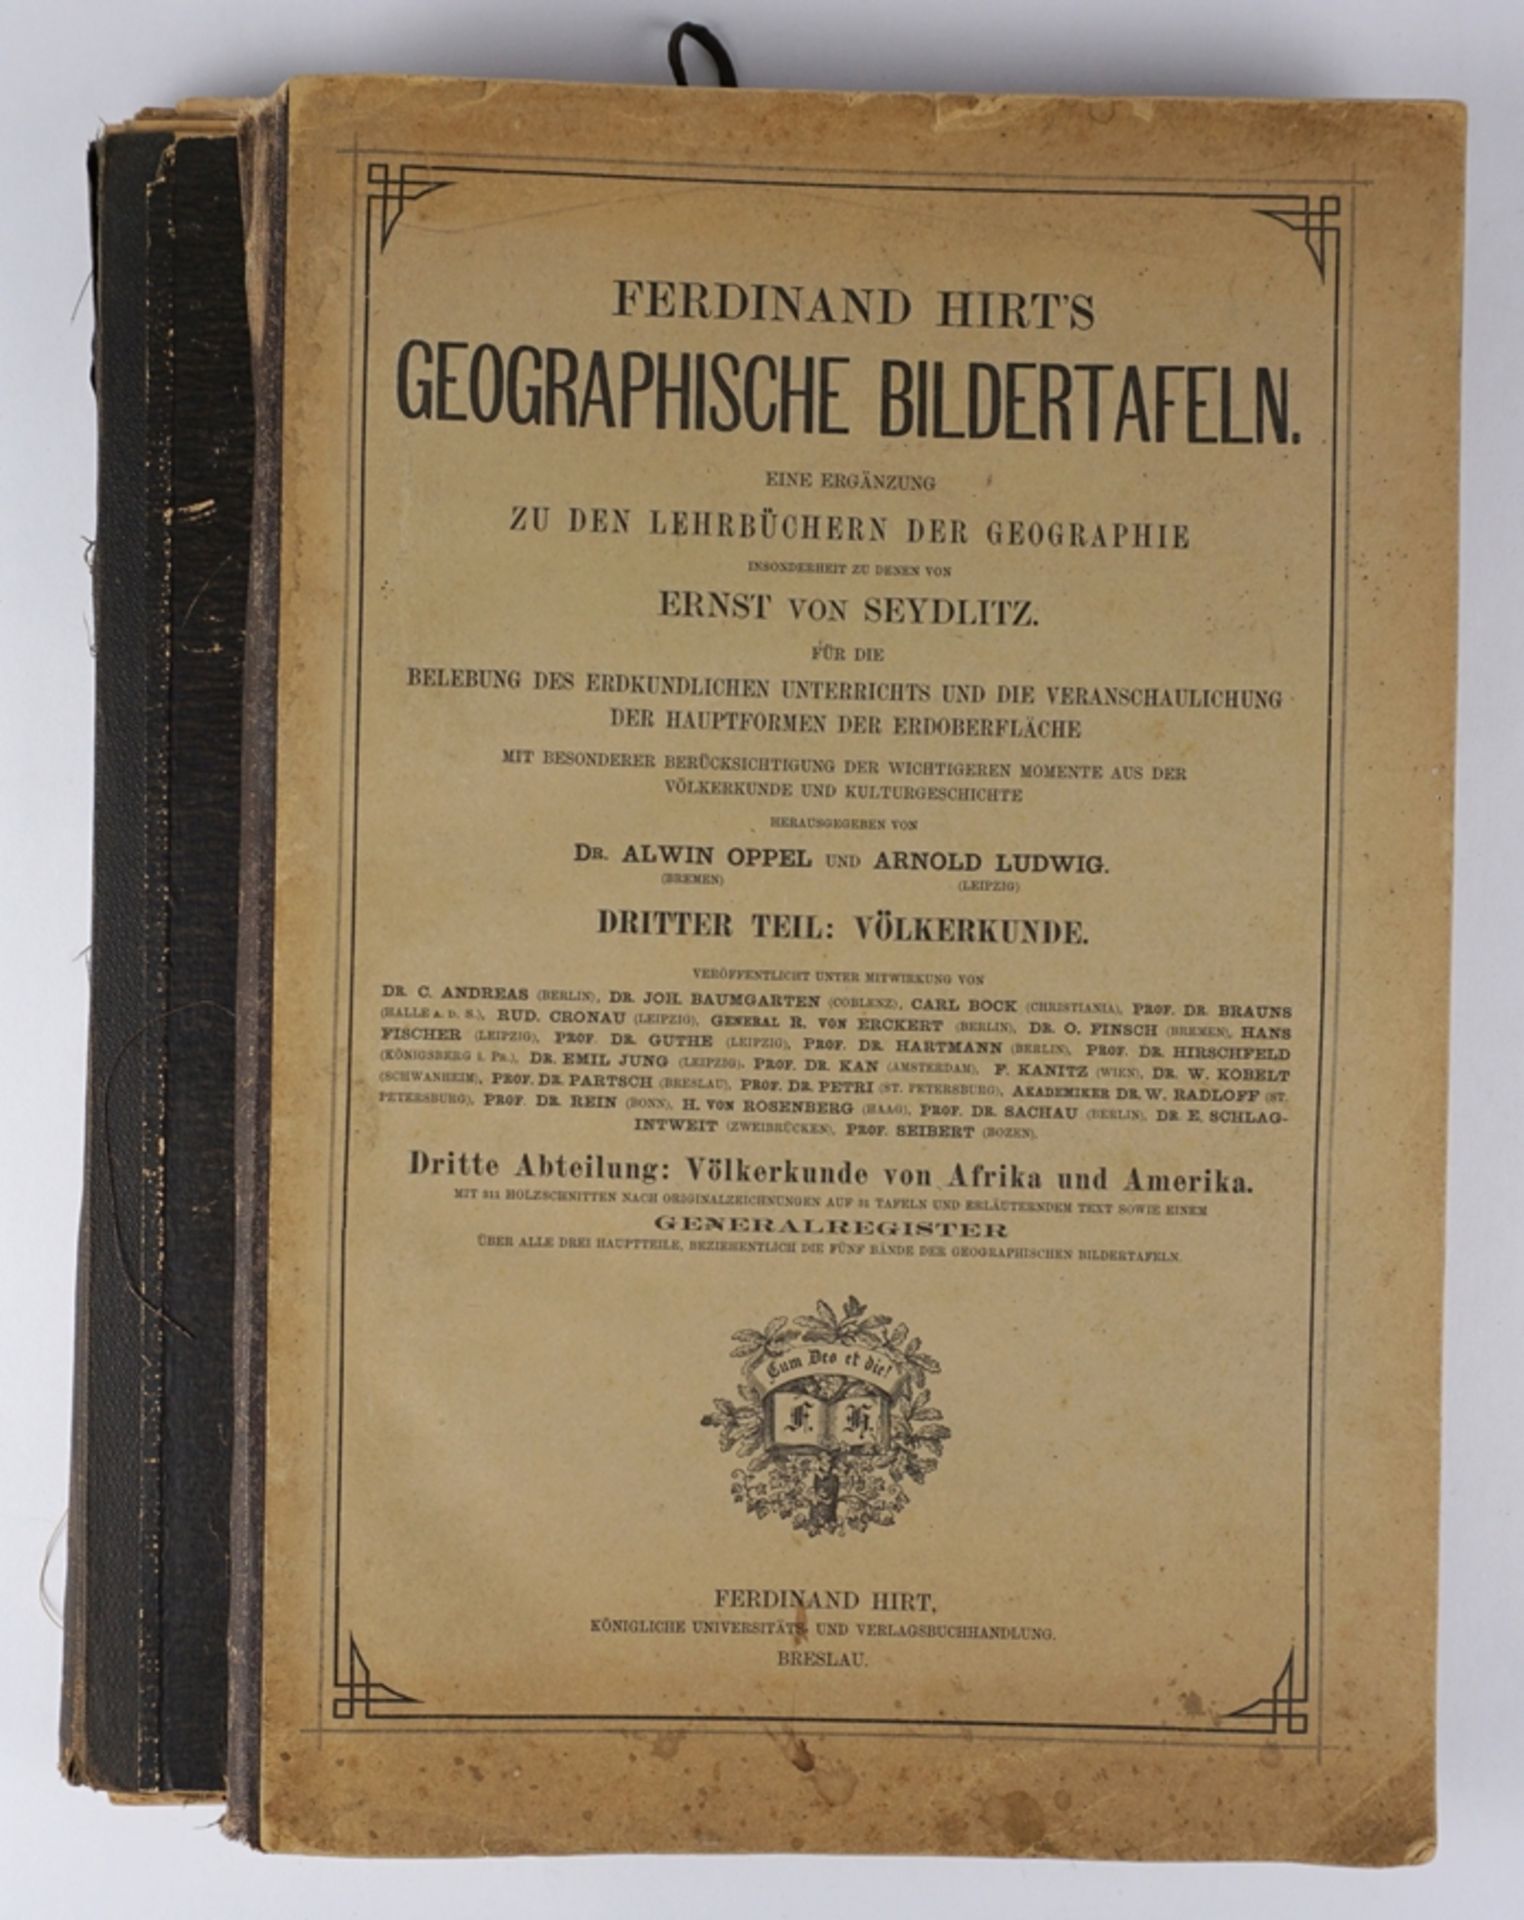 2* Ferdinand Hirt's geographische Bildertafeln, Dritter Teil: Völkerkunde, 2. und 3.Abteilung, 1887